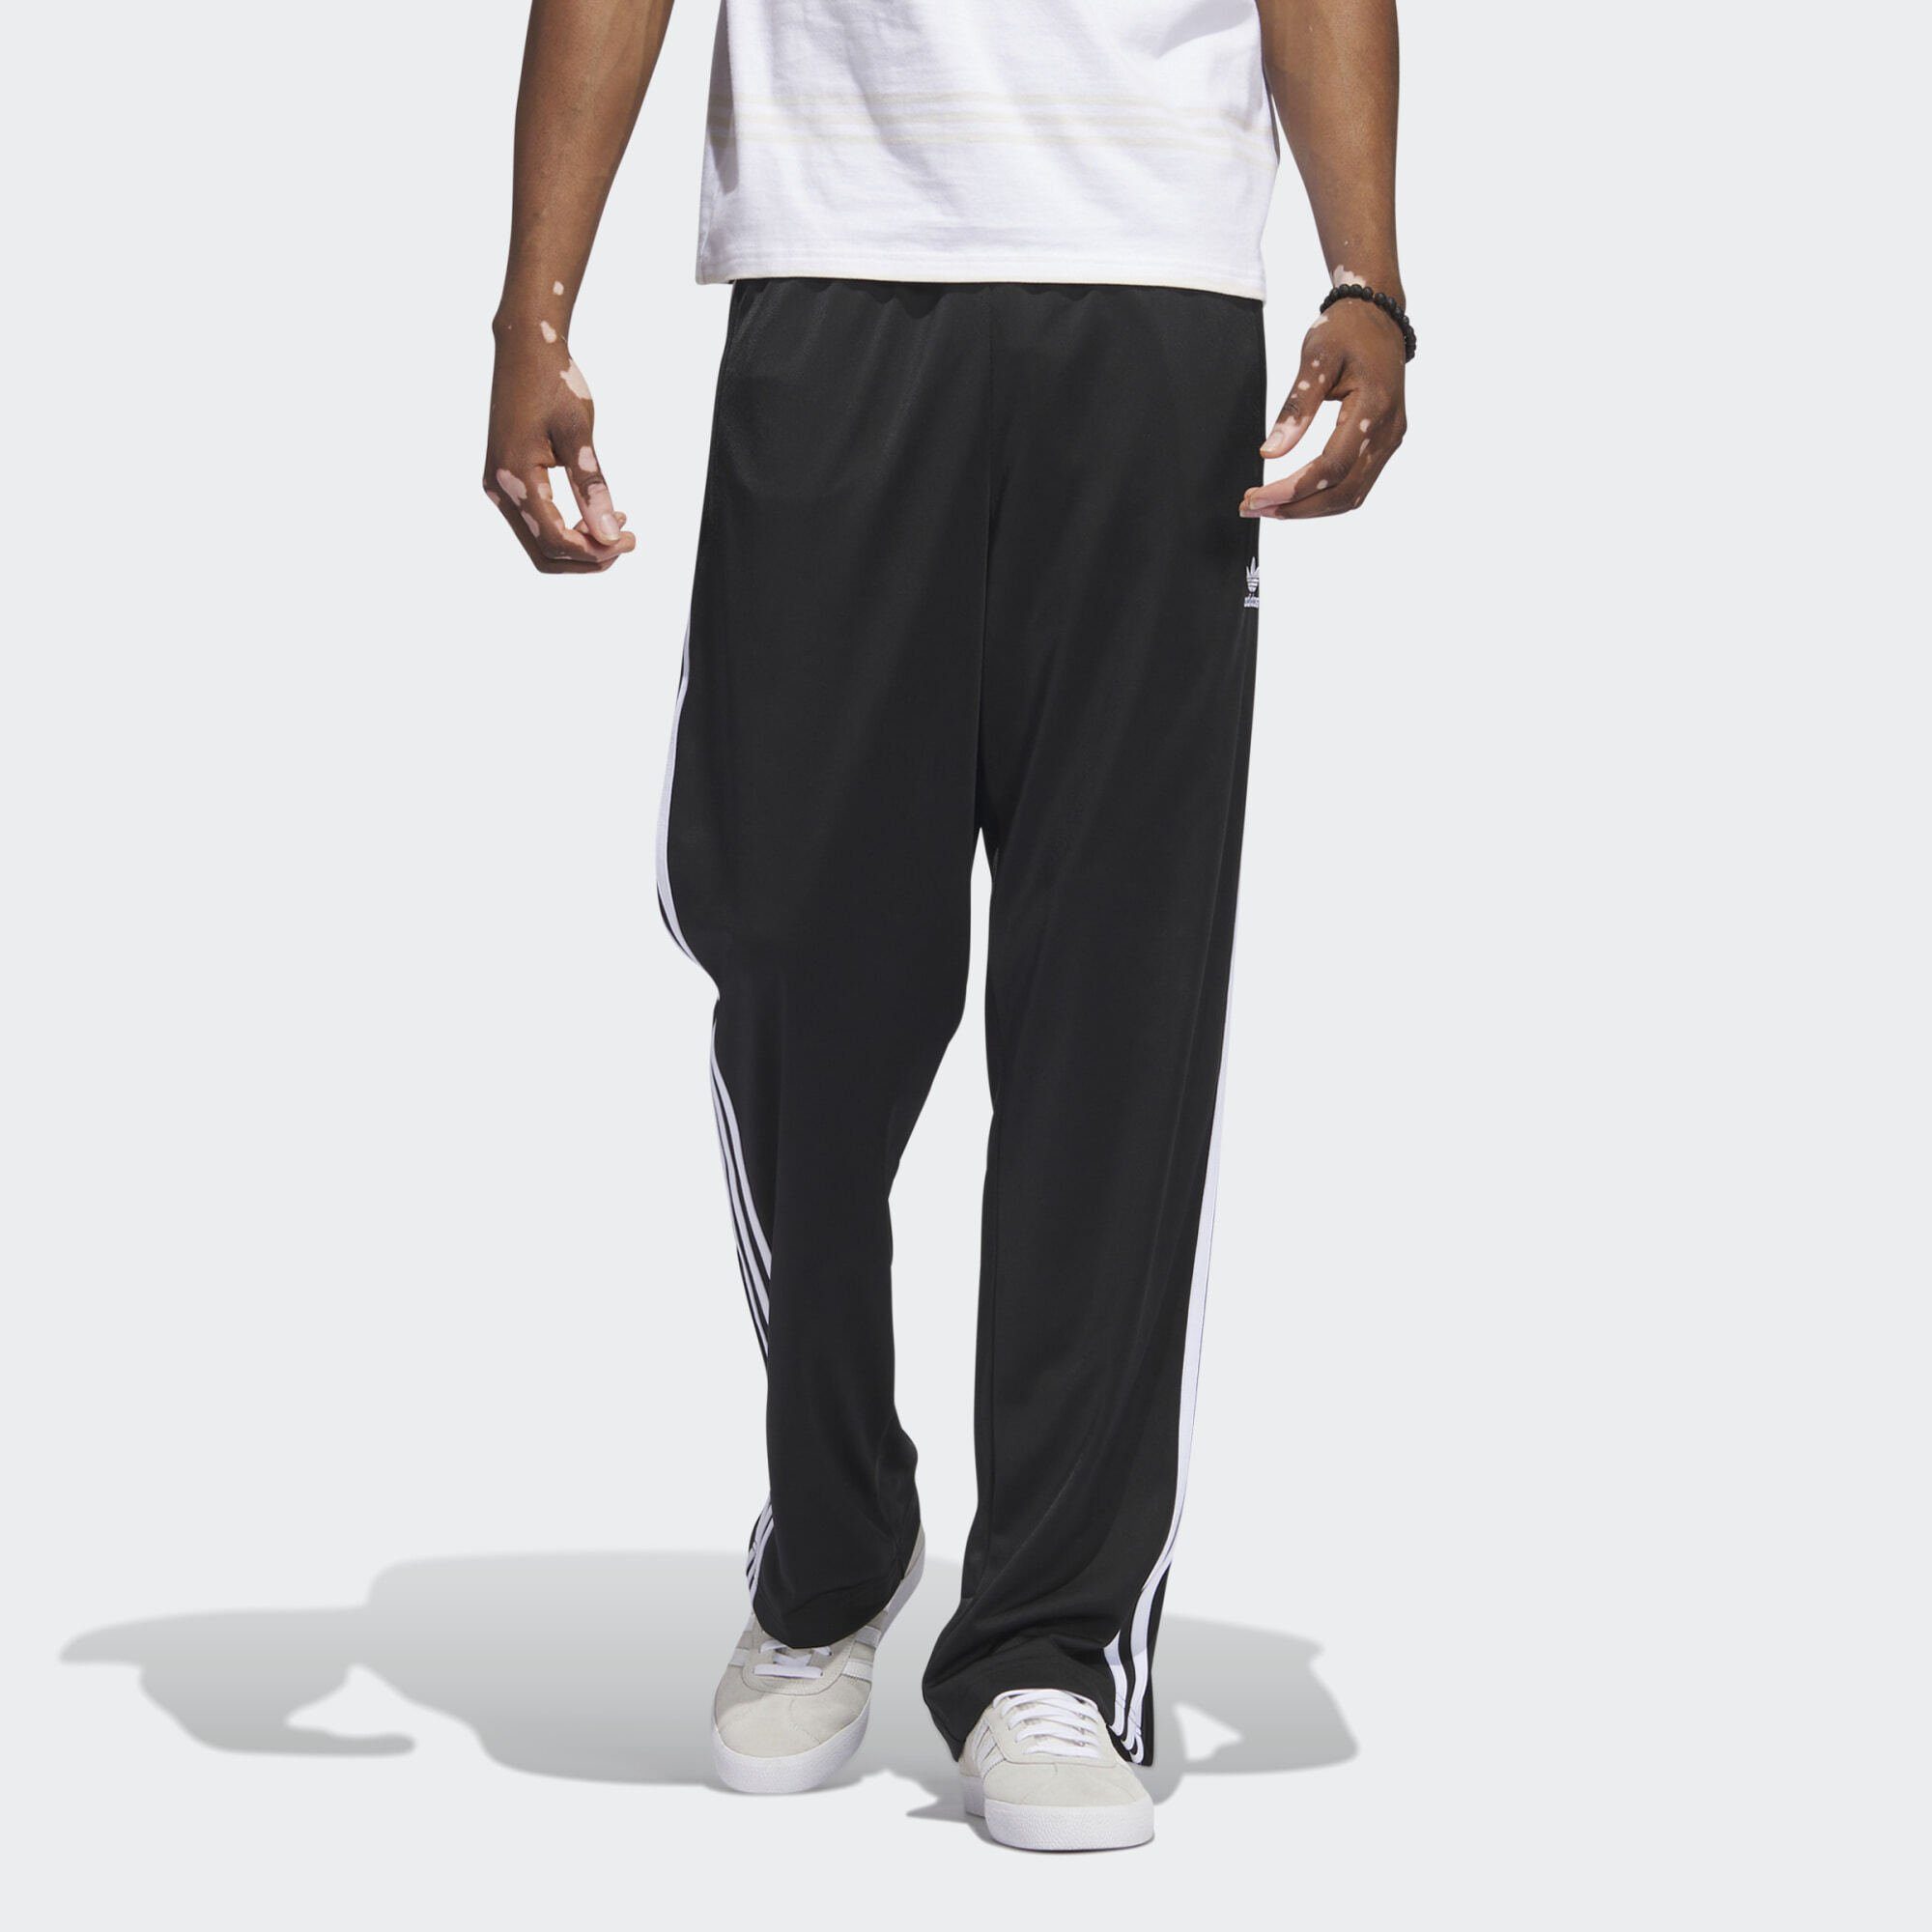 ADICOLOR Black Leichtathletik-Hose TRAININGSHOSE / adidas CLASSICS White FIREBIRD Originals